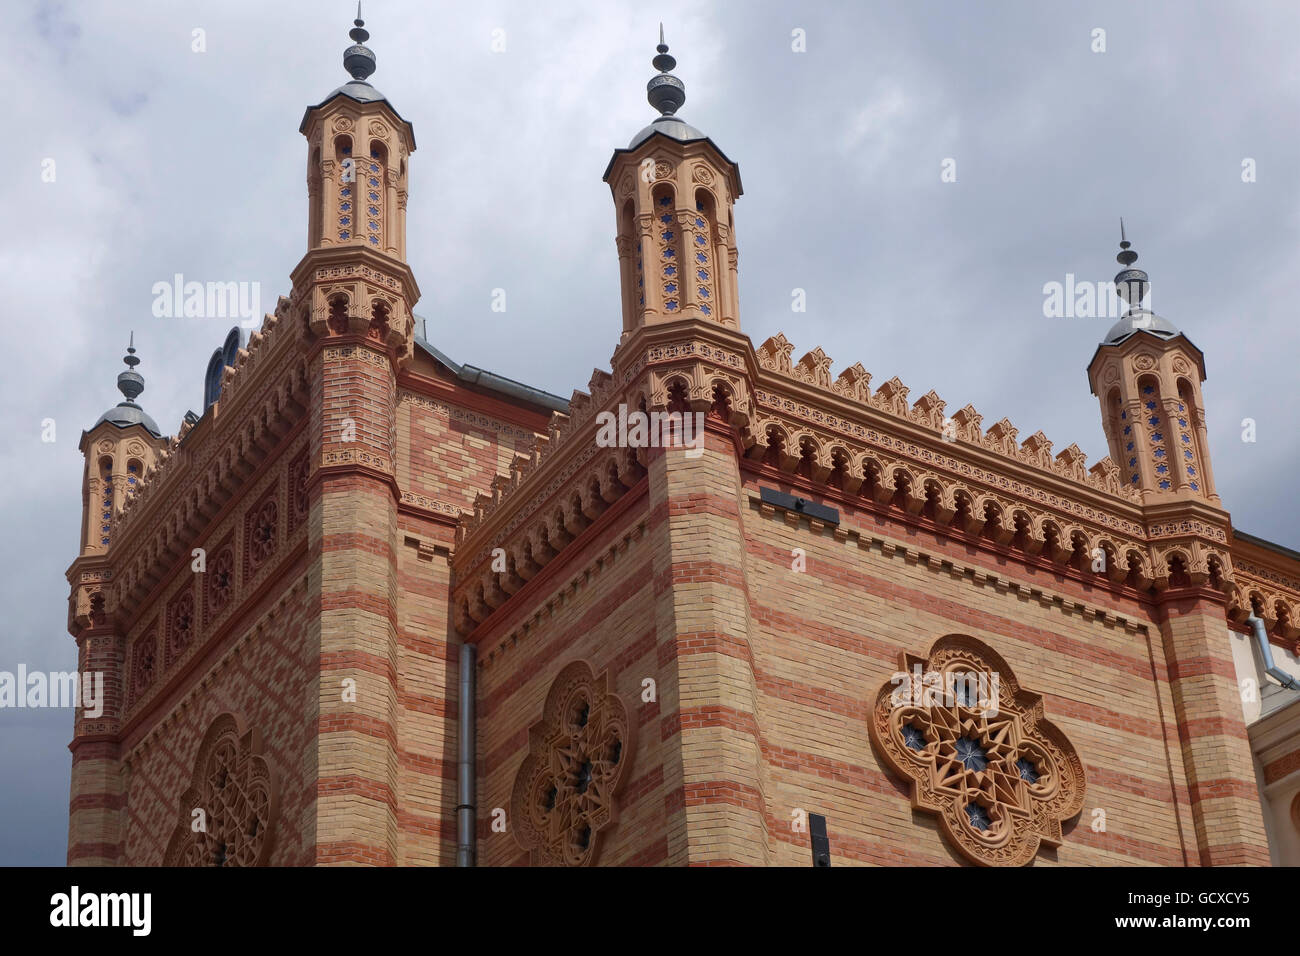 Fassade des restaurierten Choraltempel eine Synagoge gebaut im Jahre 1867 durch die ultrarechten Legionäre verwüstet, aber nach dem zweiten Weltkrieg im Jahre 1945 restauriert. Bukarest, Rumänien Stockfoto